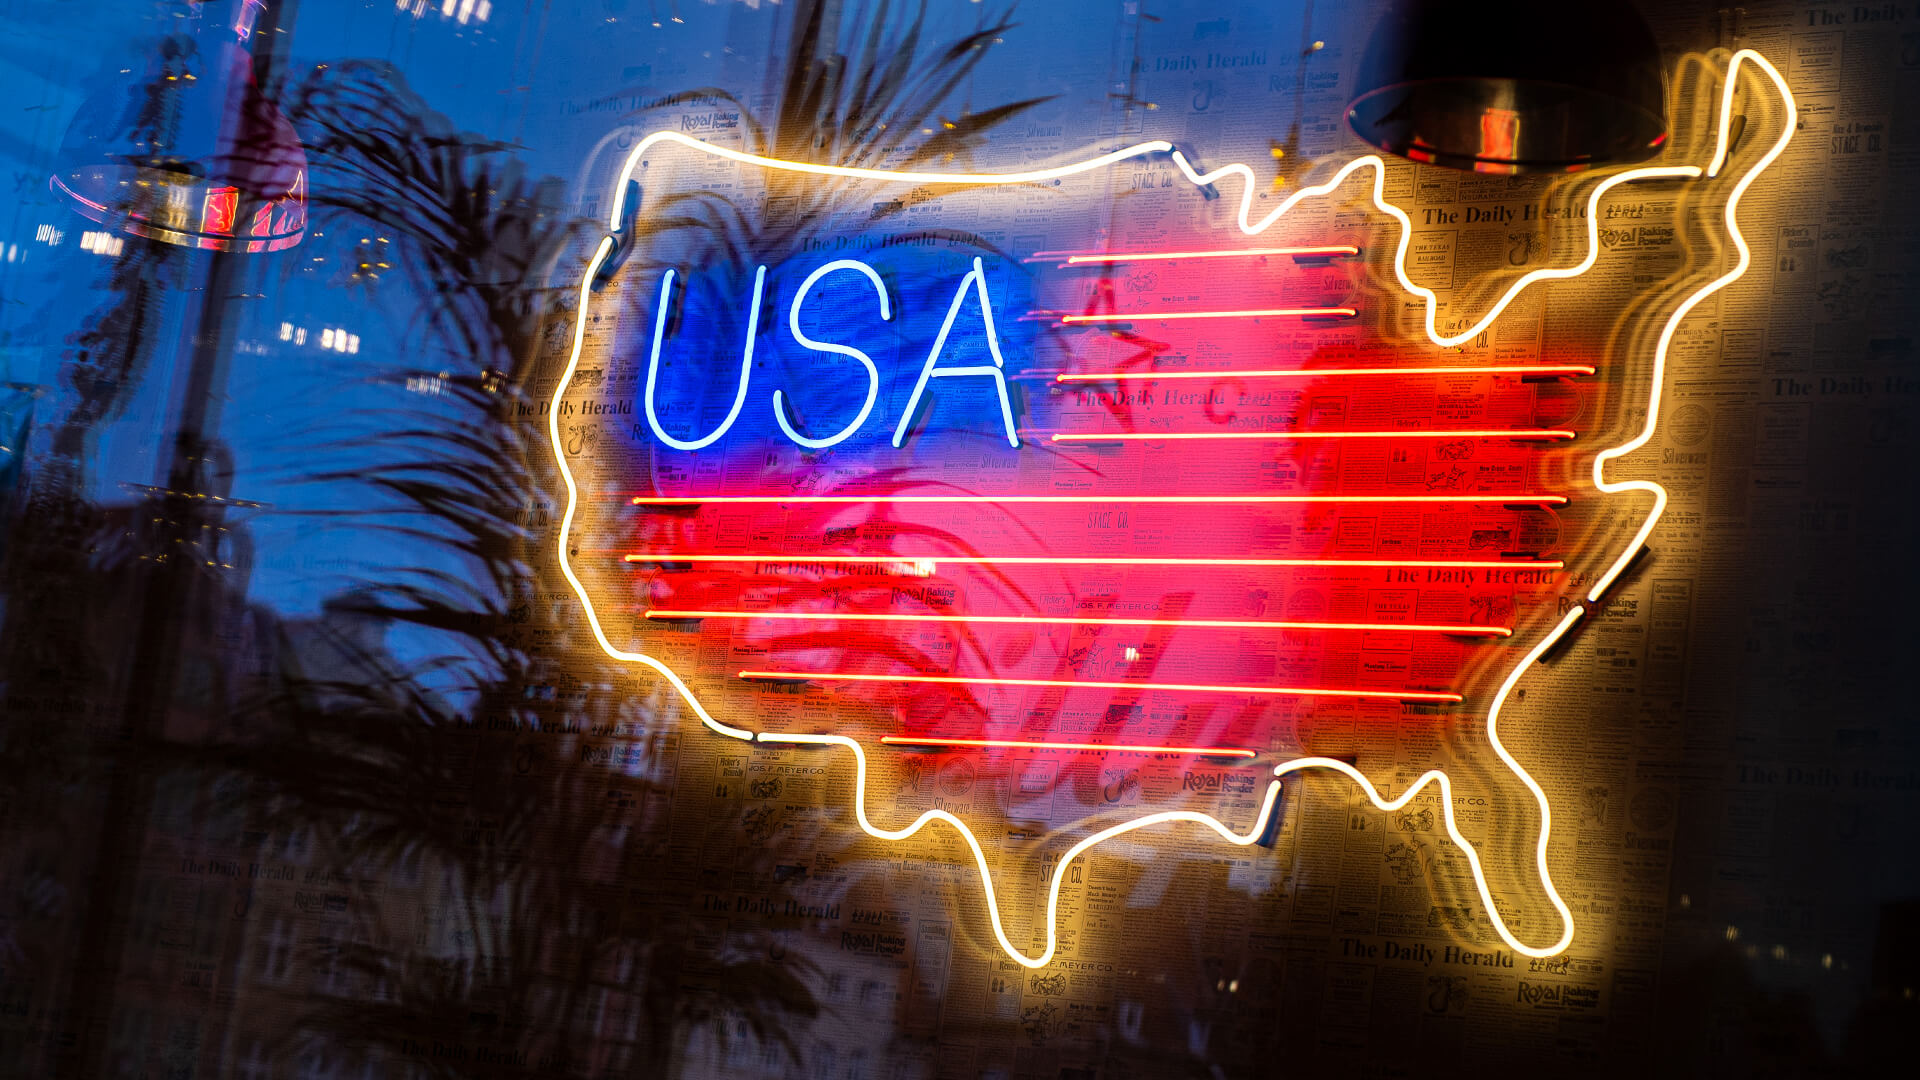 Mappa degli Stati Uniti - Mappa USA, neon, colore, insegna, produttore di neon, usa-map-sign-neos